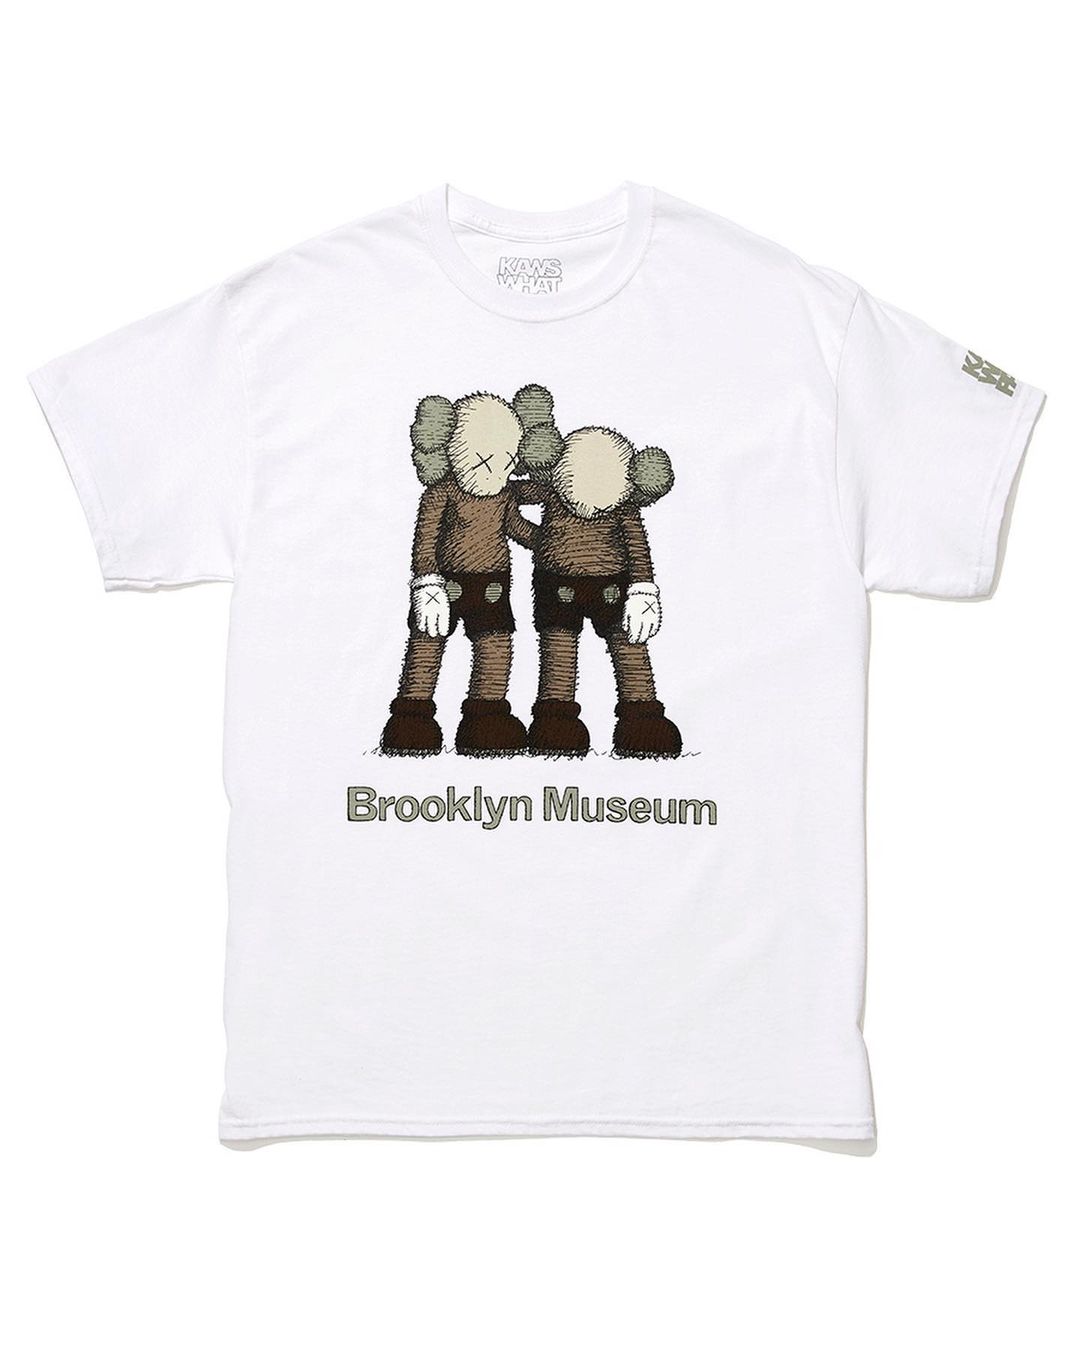 Brooklyn Museum 限定 KAWS TEE 5型が発売 (ブルックリンミュージアム カウズ)